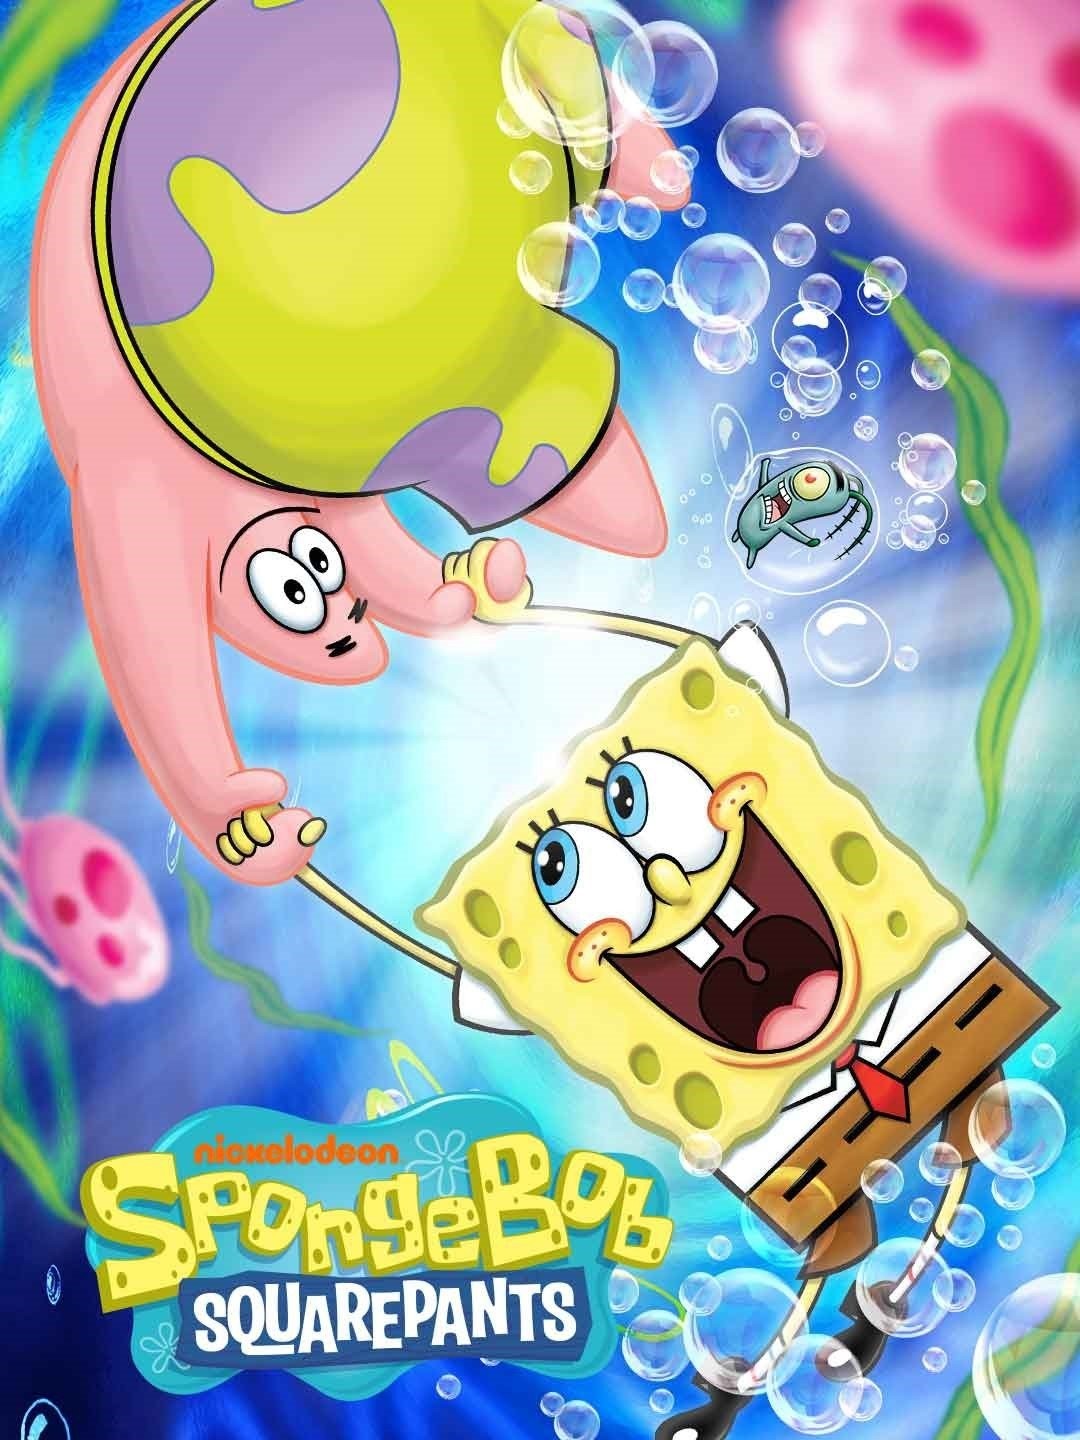 th?q=2023 Spongebob dead the 16, 